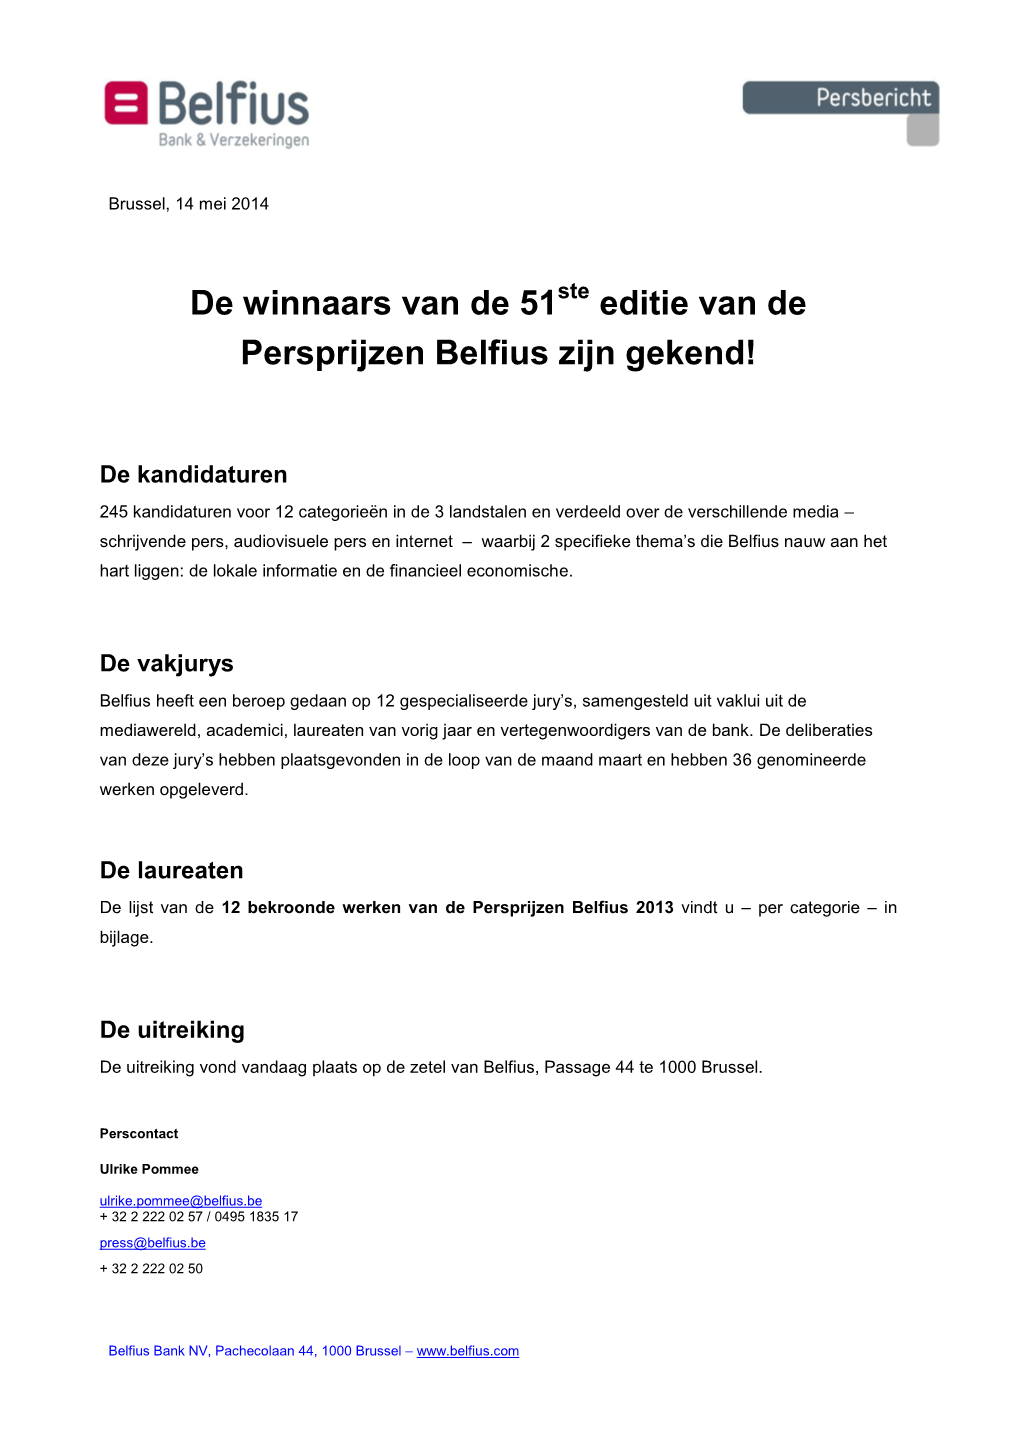 De Winnaars Van De 51Ste Editie Van De Persprijzen Belfius Zijn Gekend!